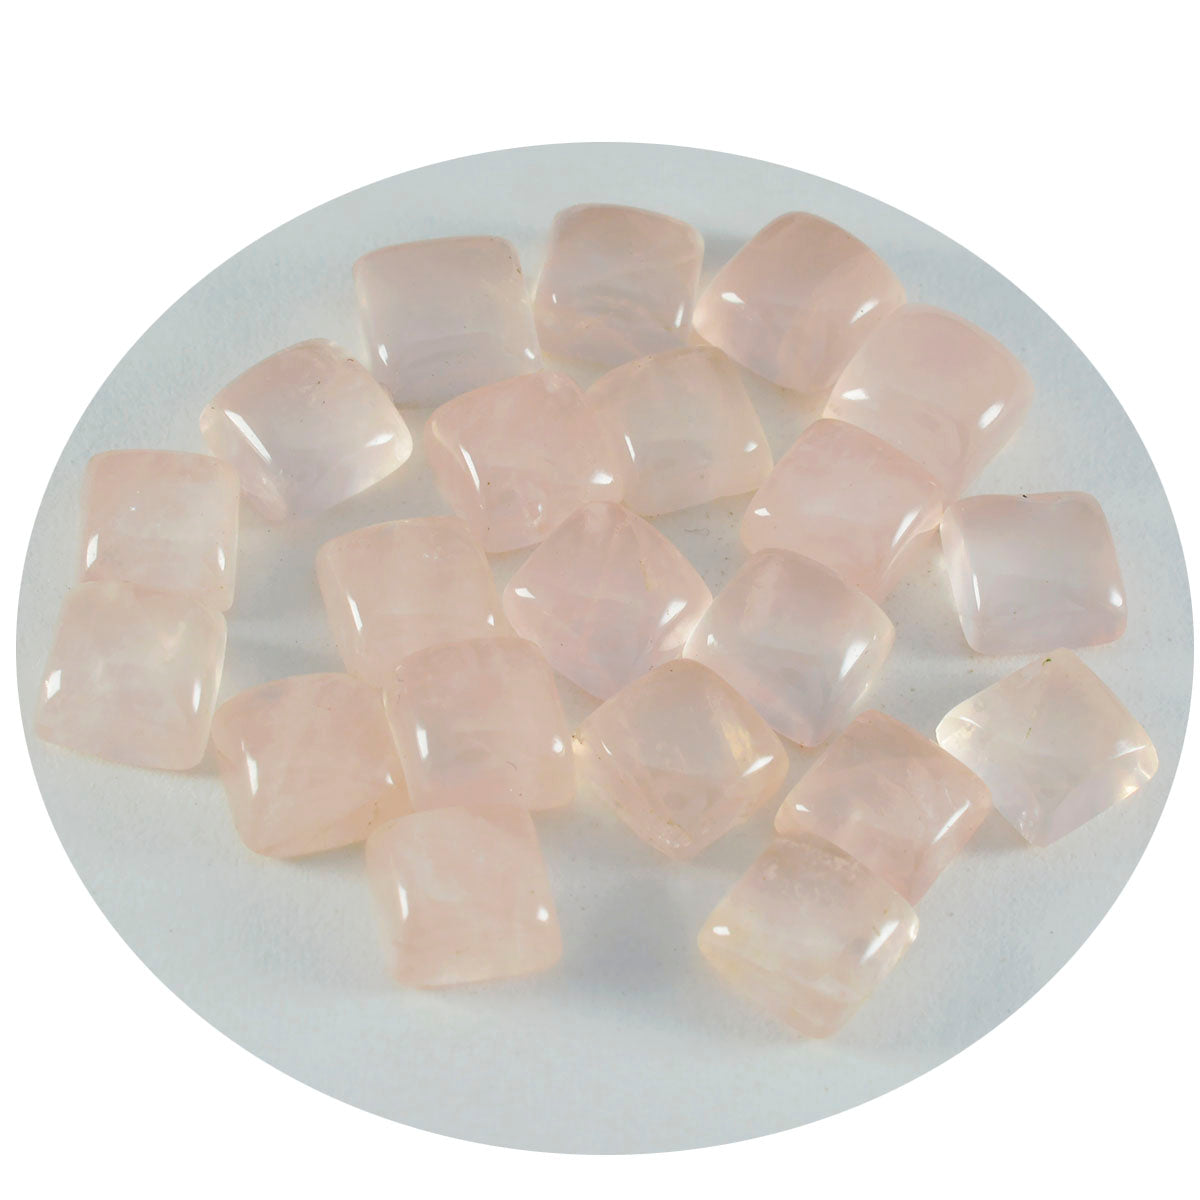 Riyogems 1pc cabochon de quartz rose rose 10x10mm forme carrée qualité surprenante pierres précieuses en vrac